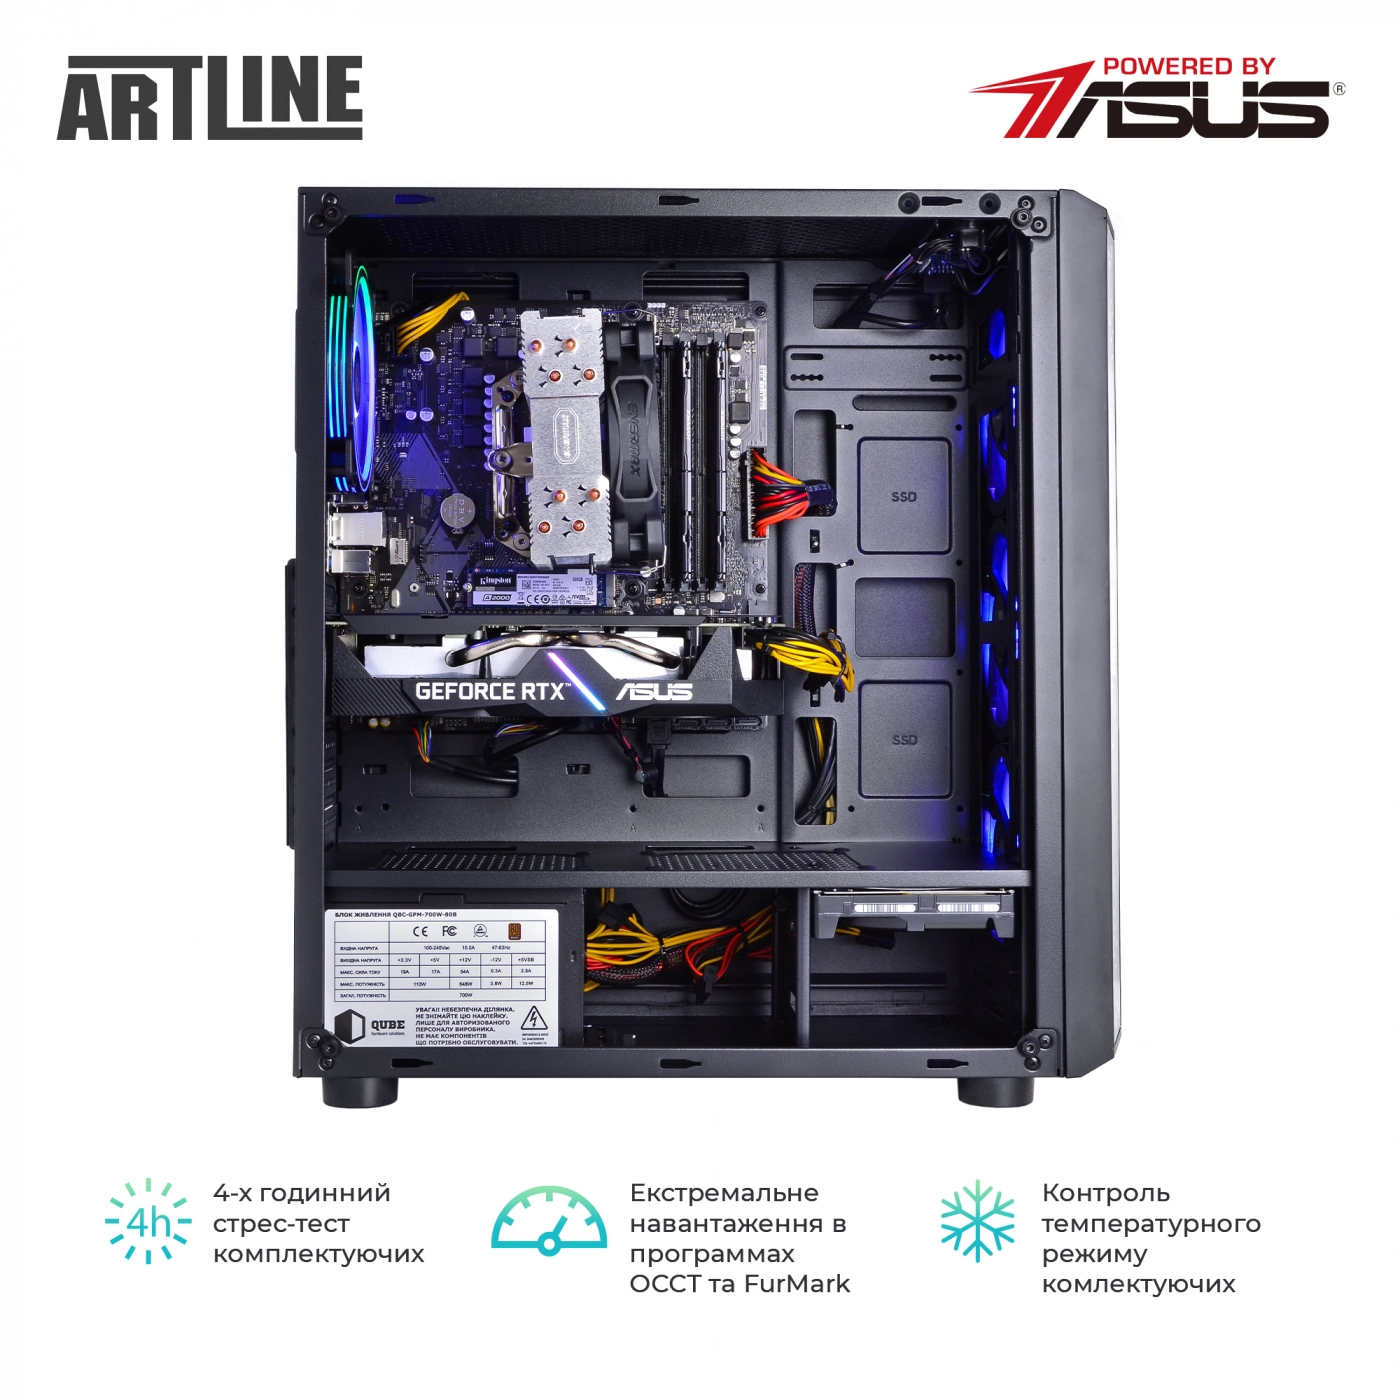 Купить Компьютер ARTLINE Gaming X85v01 - фото 8